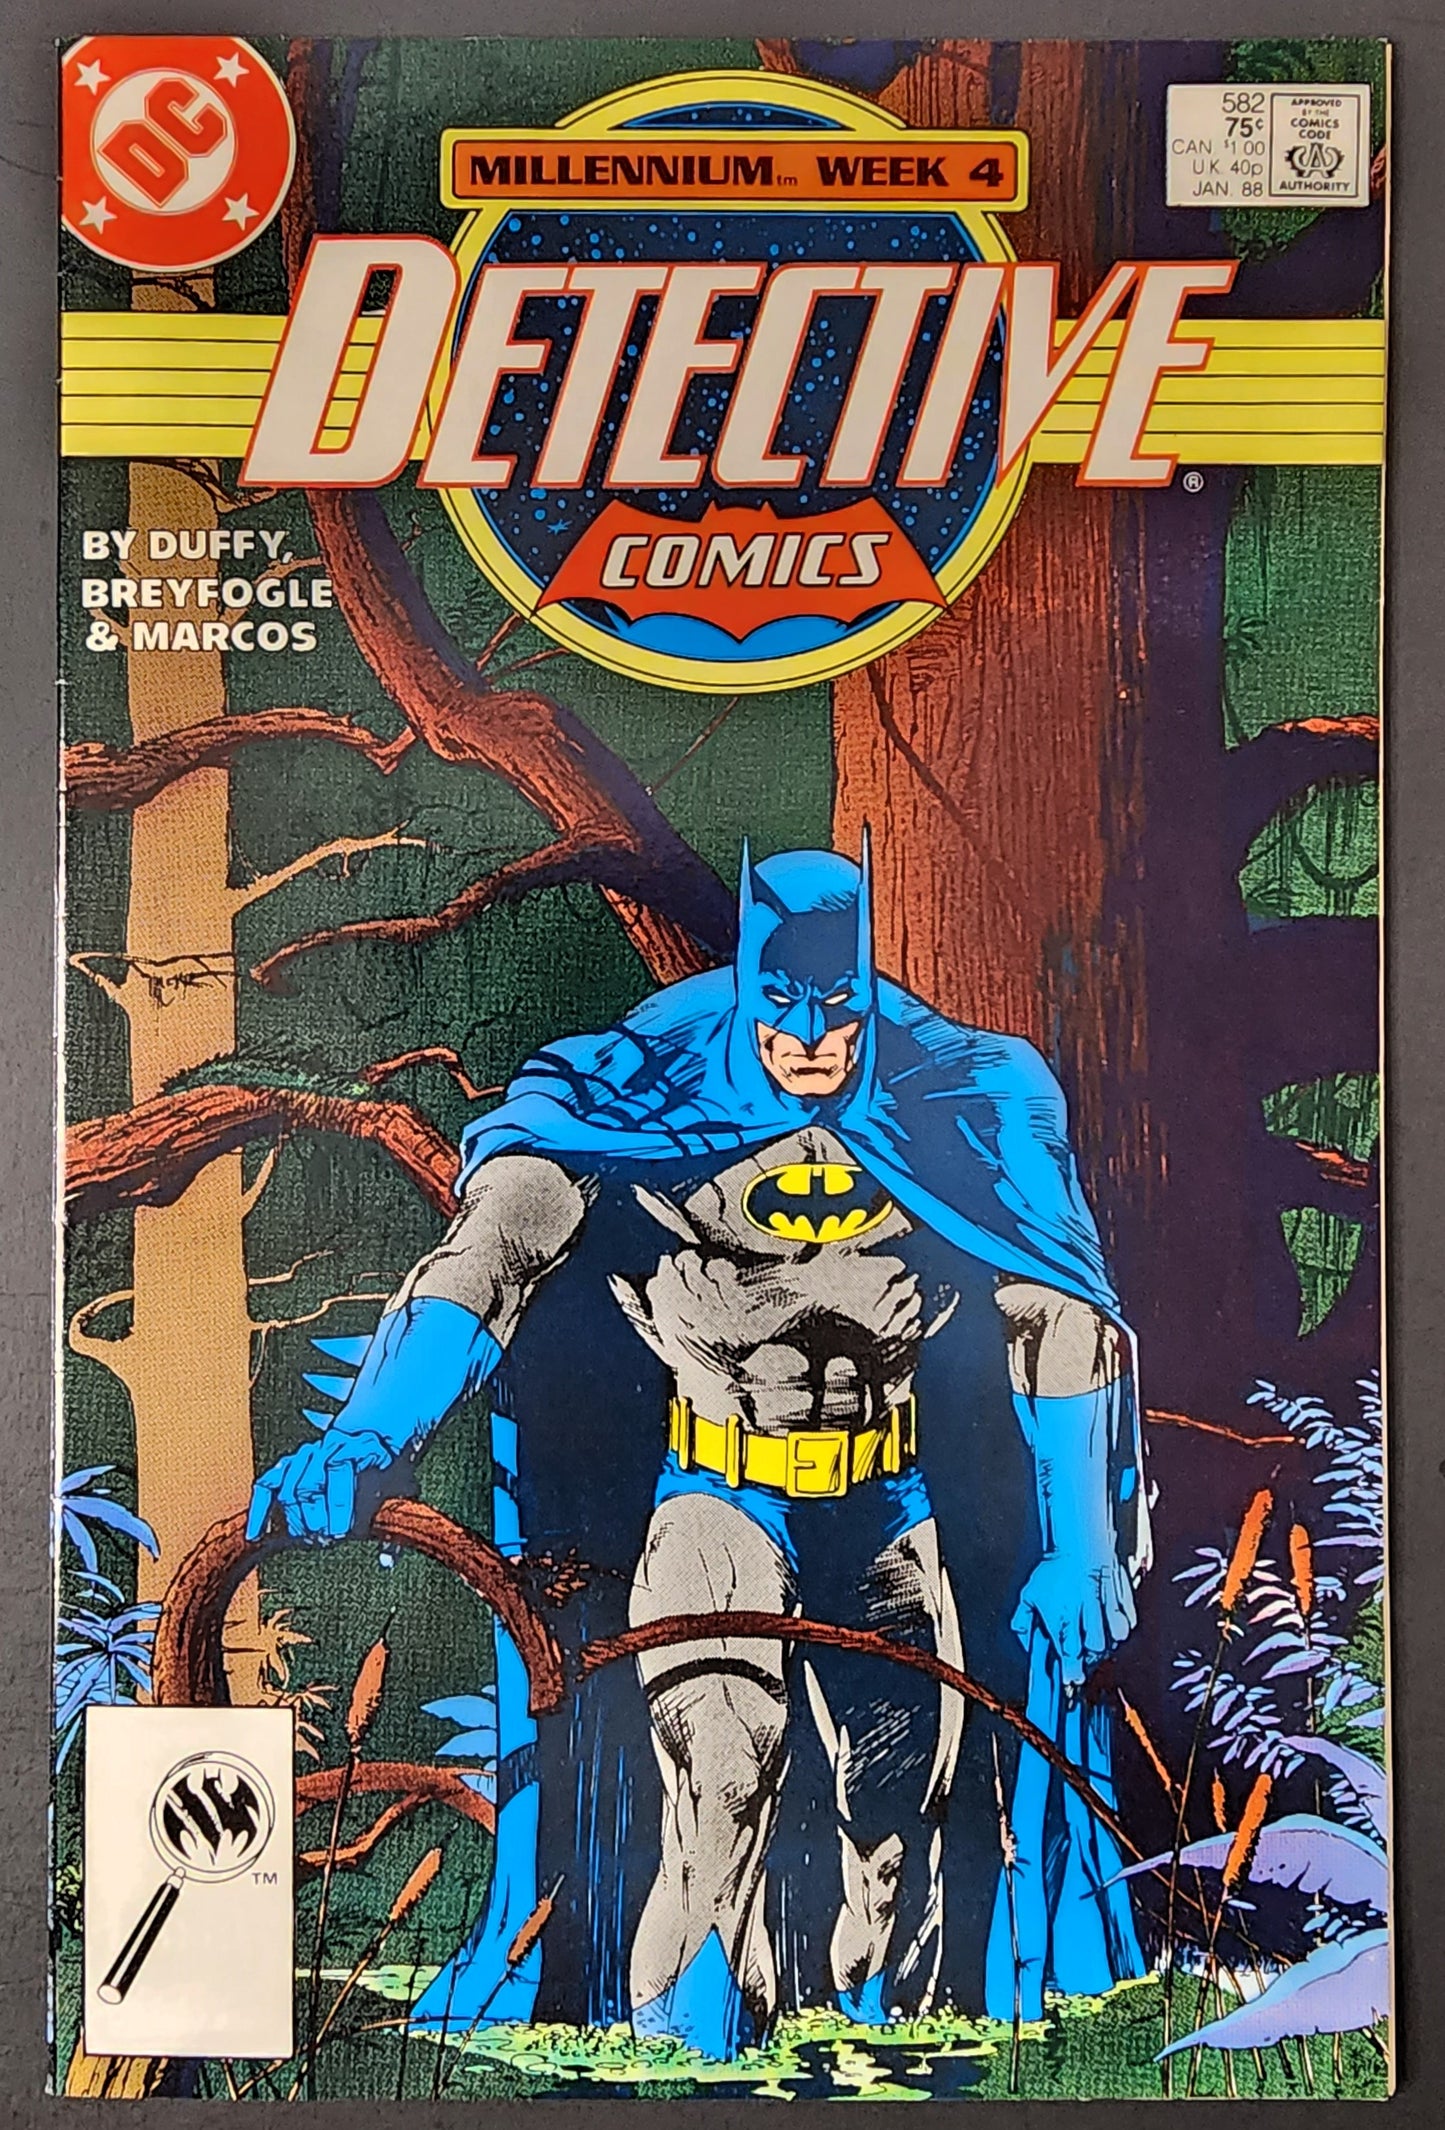 Detective Comics #582 (FN-)